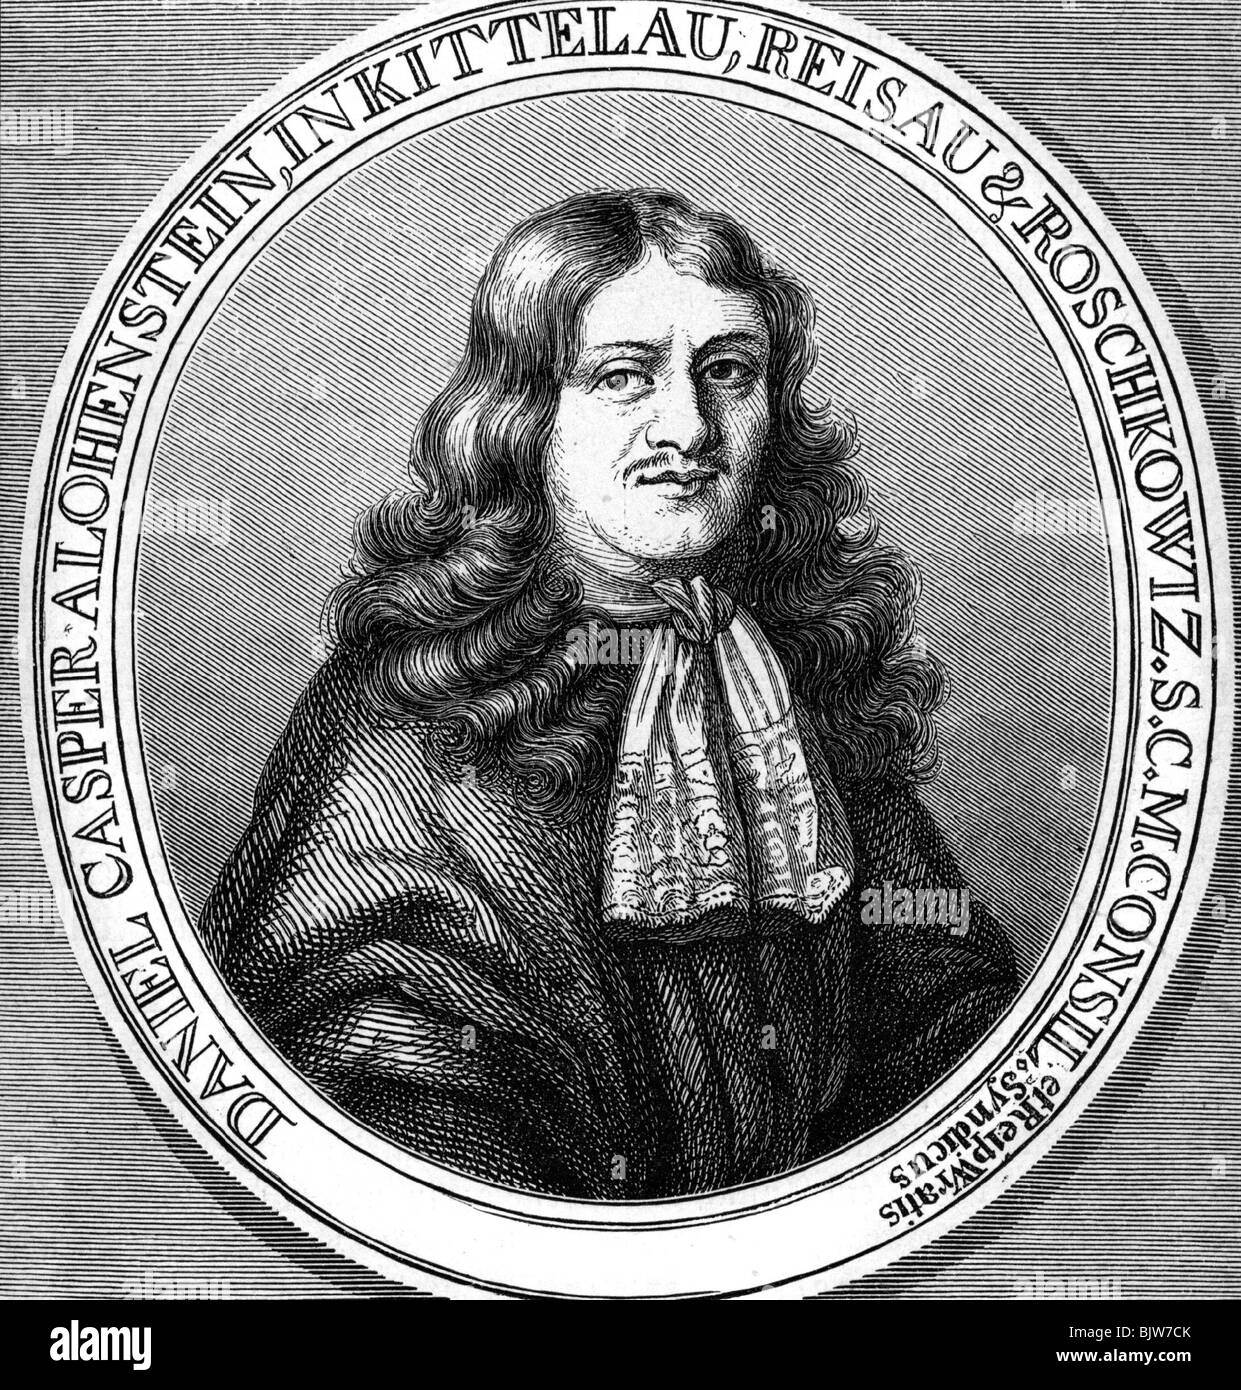 Kaspar von Lohenstein, Daniel, 25.1.1635 - 28.4.1683, l'auteur allemand / écrivain (poète), portrait, ovale, gravure sur cuivre, 17e siècle, l'artiste n'a pas d'auteur pour être effacé Banque D'Images